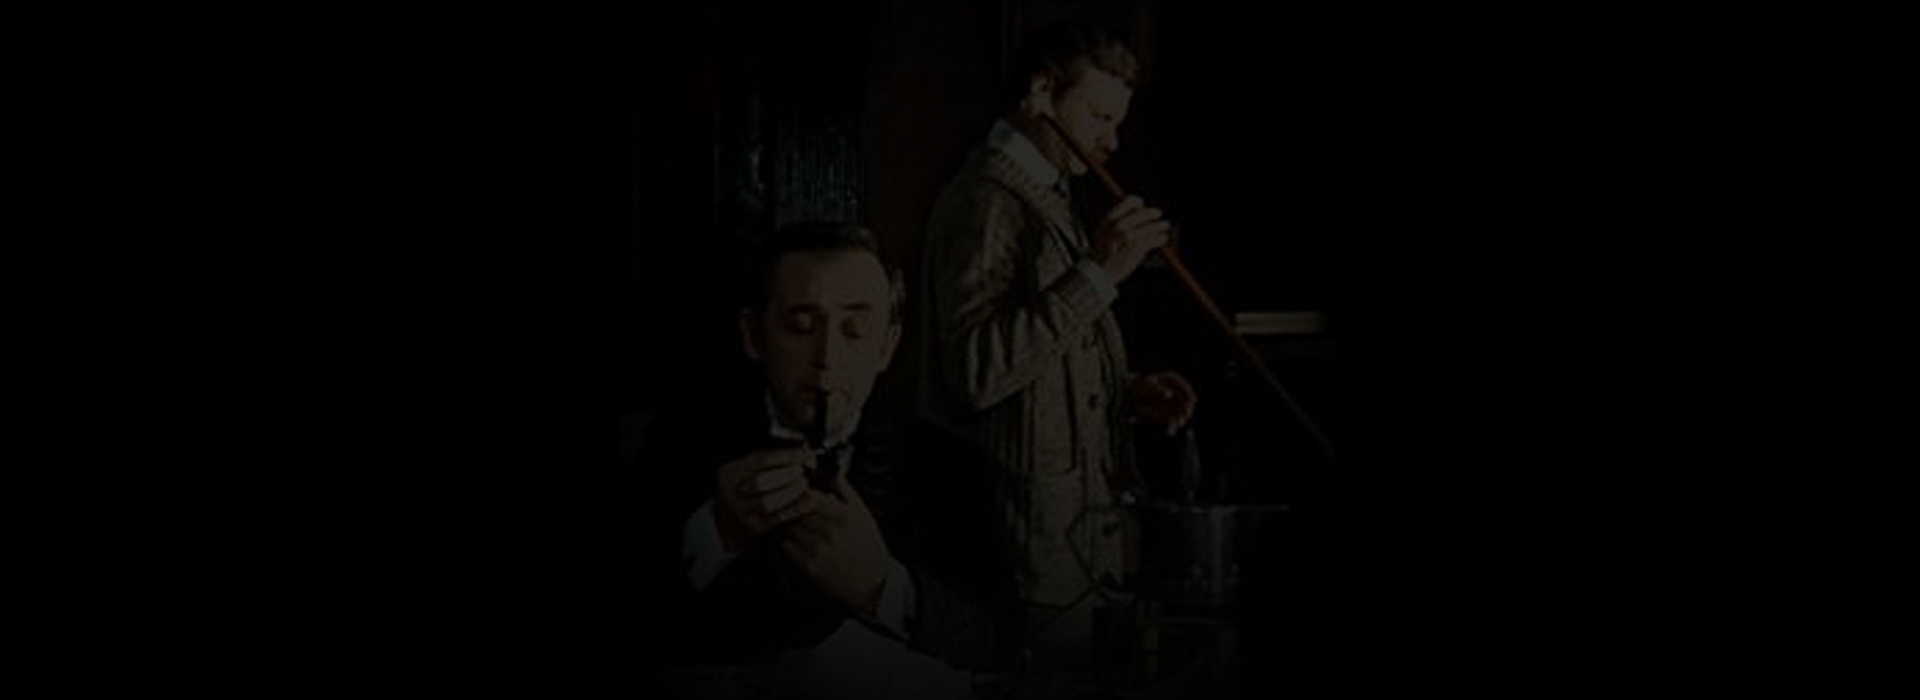 Постер фильма Шерлок Холмс и доктор Ватсон: Сокровища Агры (первая серия)